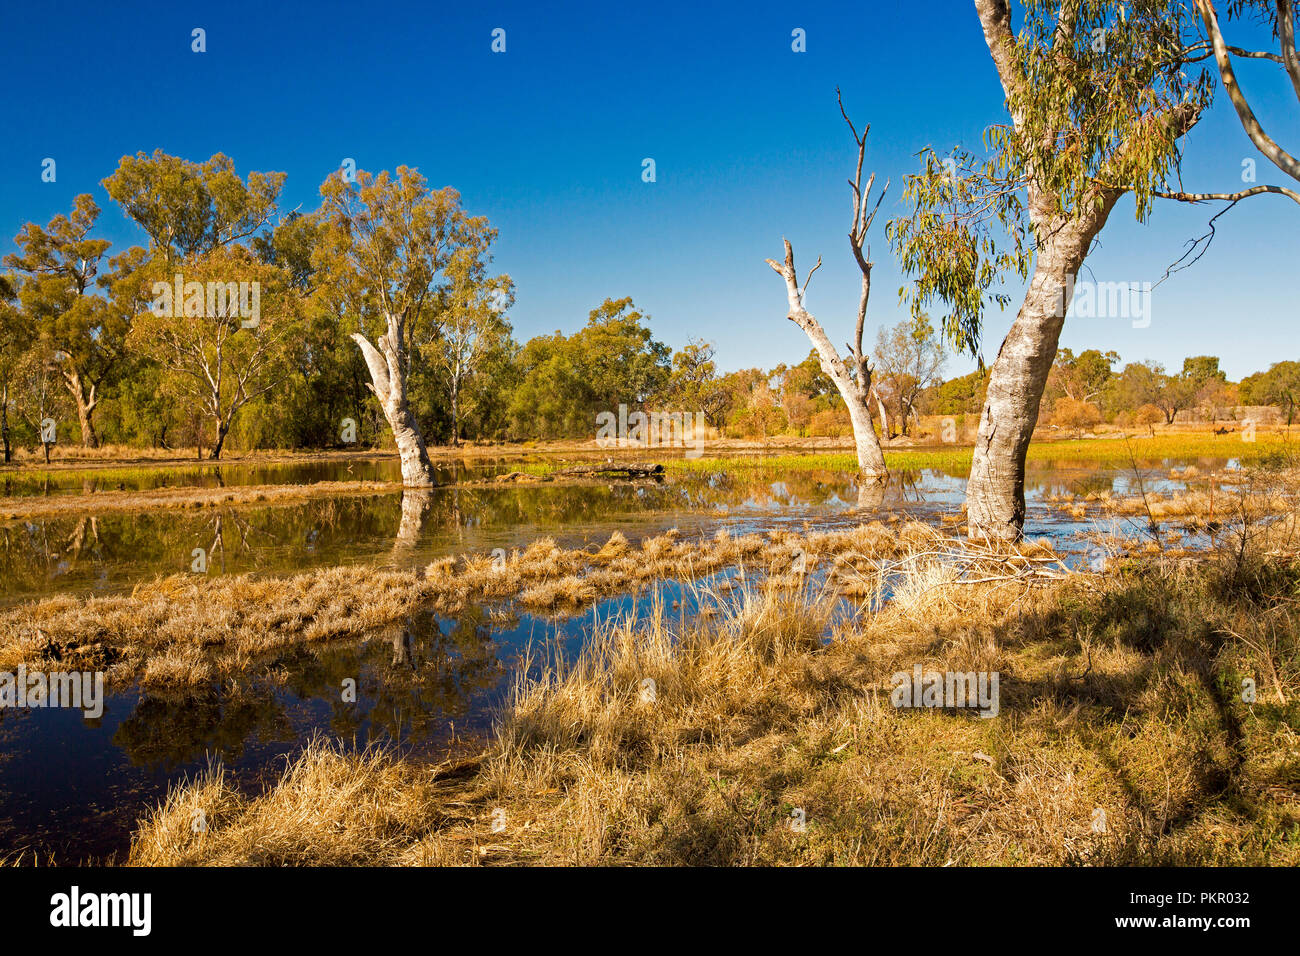 Paysage australien colorés avec des herbes et des roseaux d'or, gommiers, et ciel bleu reflété dans les eaux calmes de Tiger Bay wetlands at Warren EN IN Banque D'Images